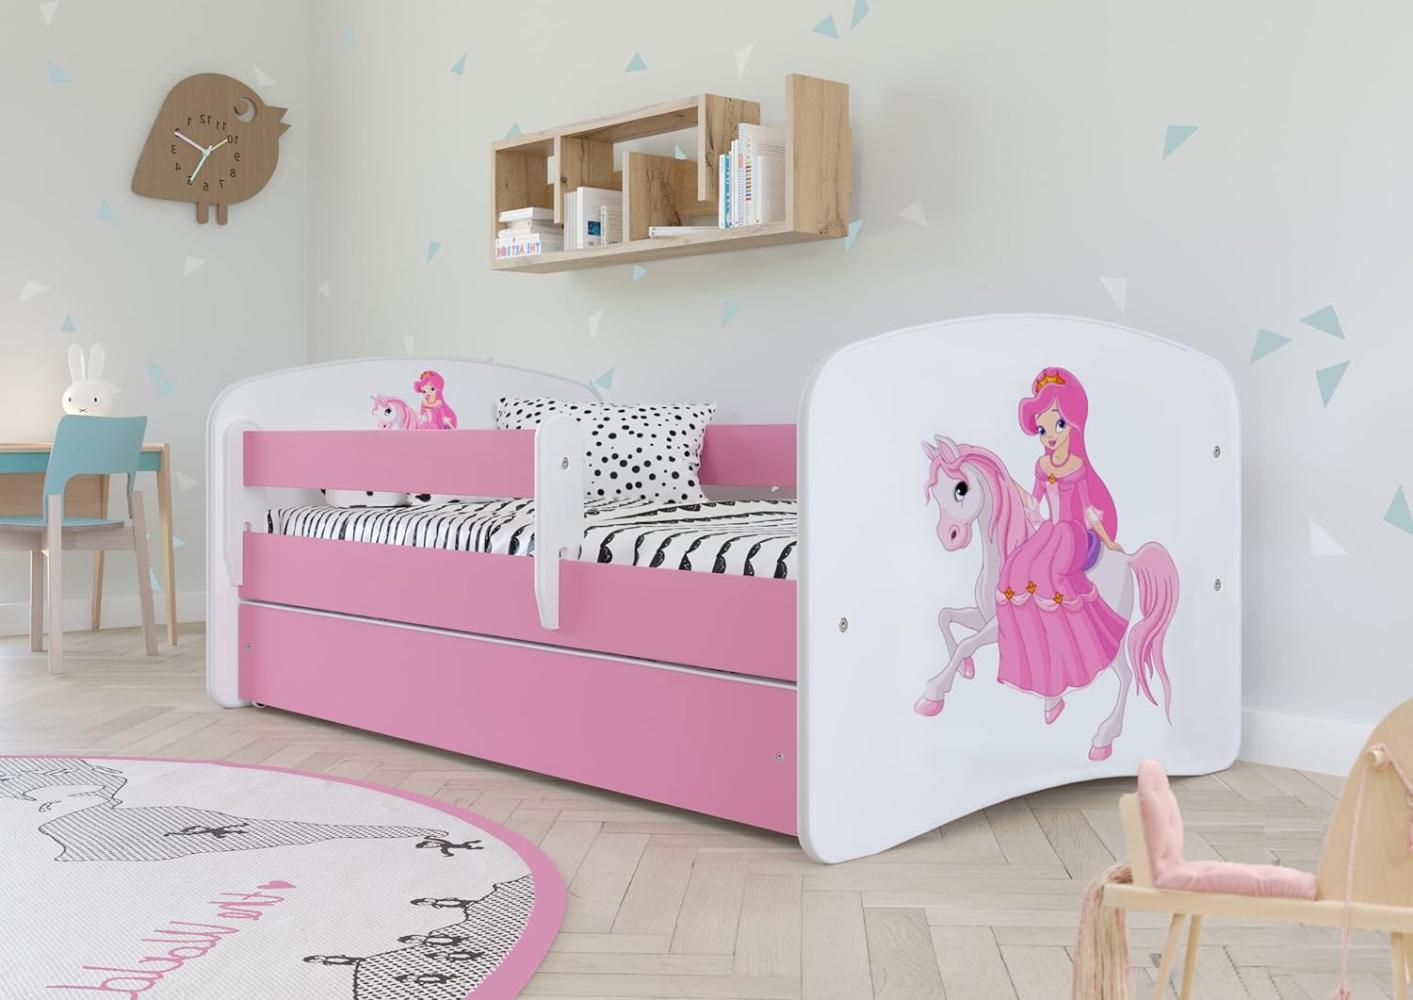 Kocot Kids 'Prinzessin auf dem Pony' Kinderbett 70 x 140 cm Rosa, mit Rausfallschutz, Matratze, Schublade und Lattenrost Bild 1